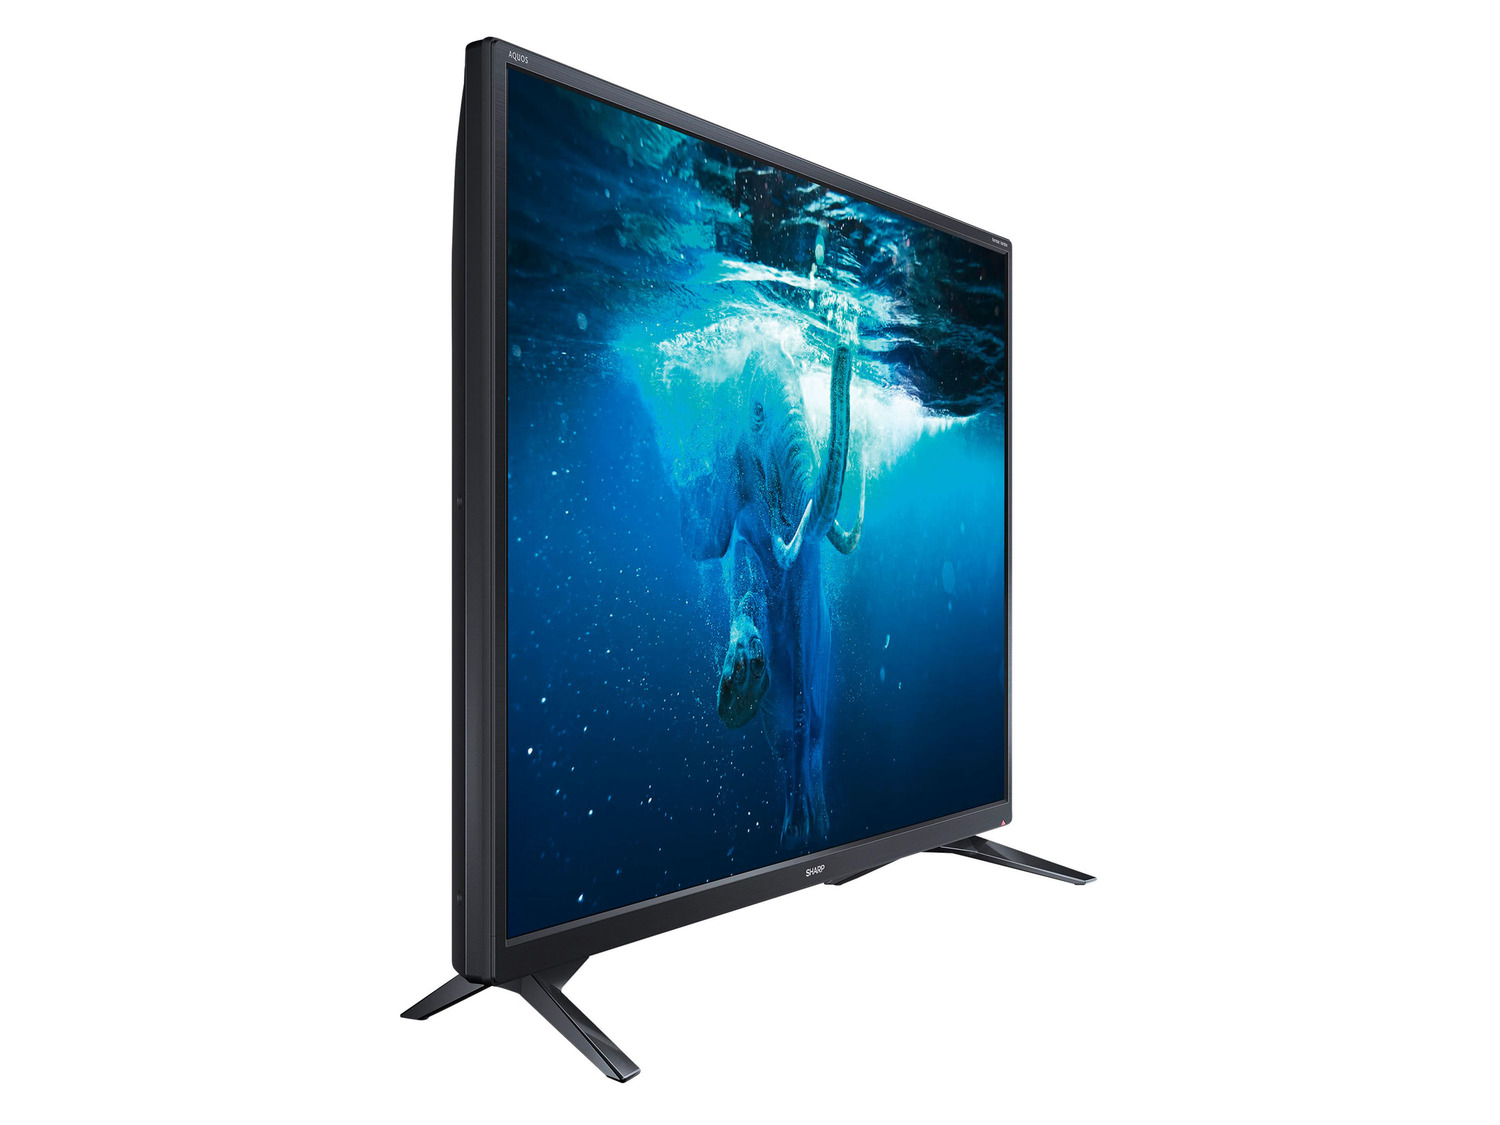 Hesje overtuigen Rubriek Sharp 32" HD Ready Smart TV 32BC2E online kopen | LIDL